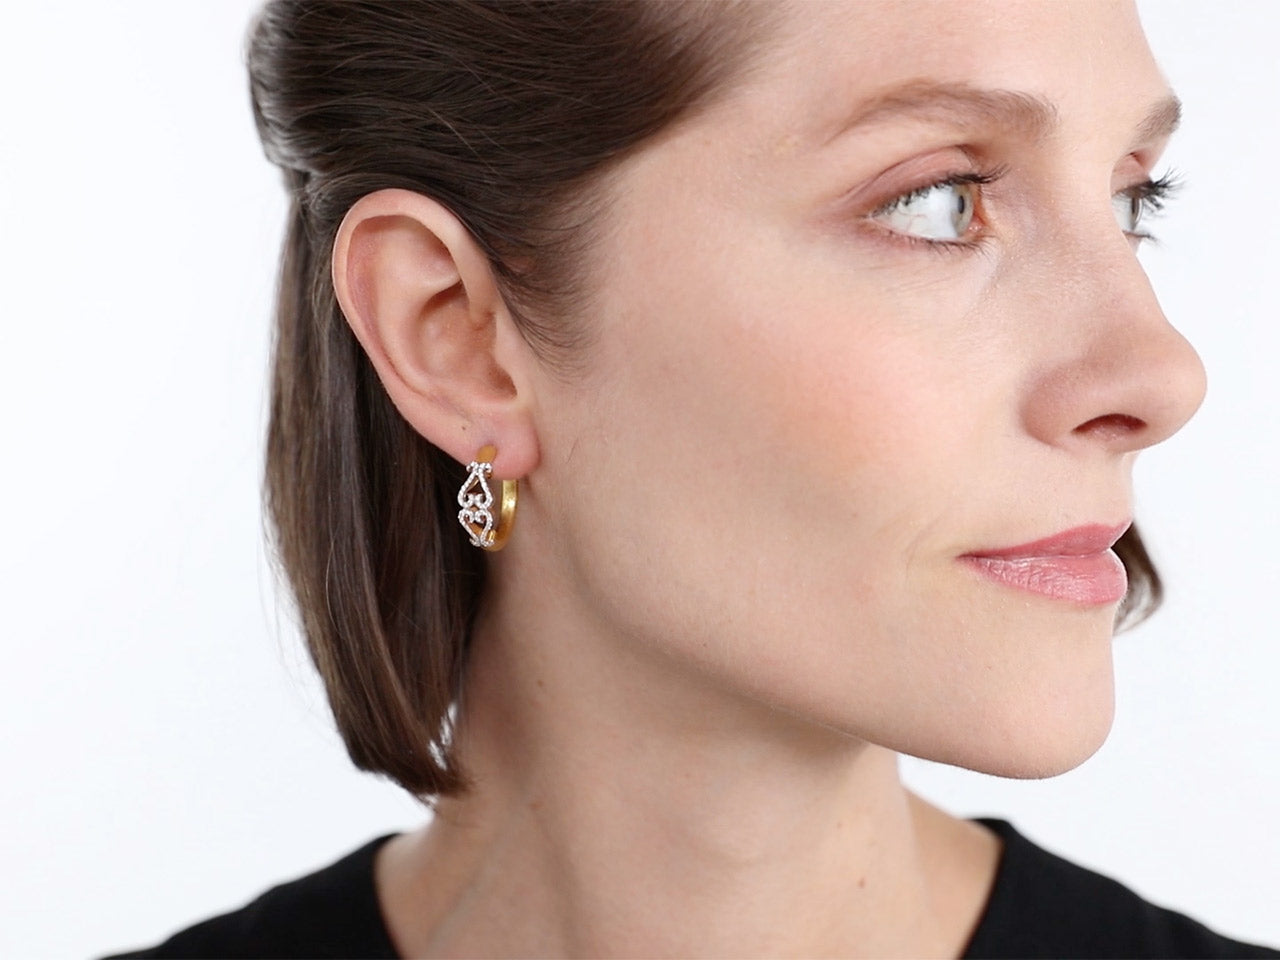 Rhonda Faber Green Diamond Double-Heart Hoop Earrings in 18K Gold, Small